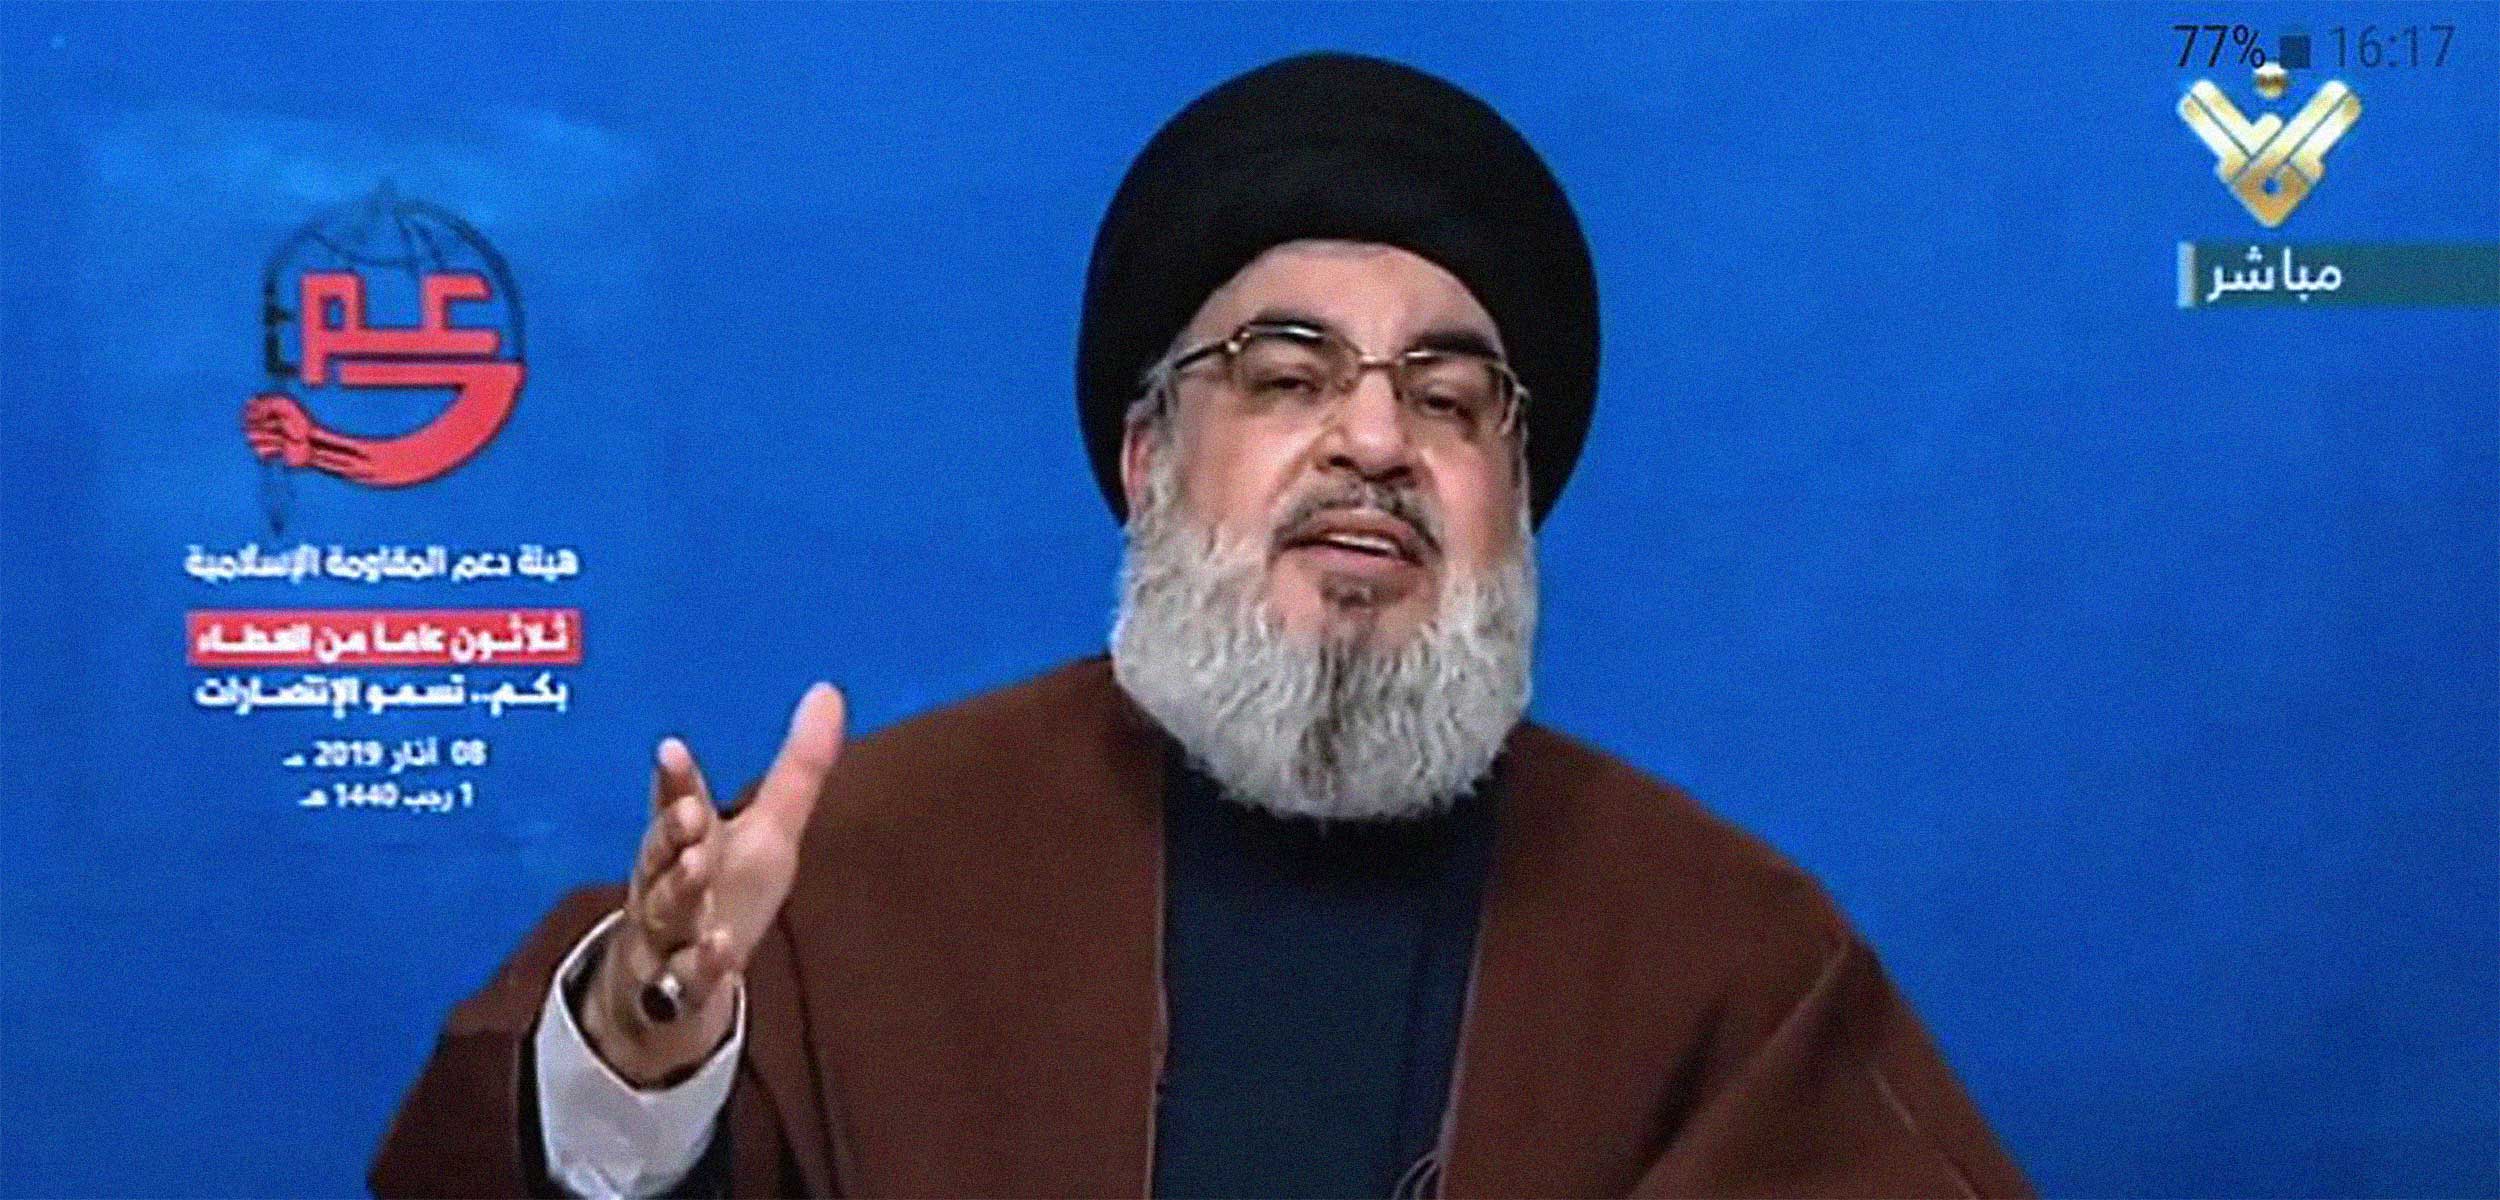 حزب الله بين الأزمة المالية والتعبئة الإيديولوجية... مسارات متناقضة